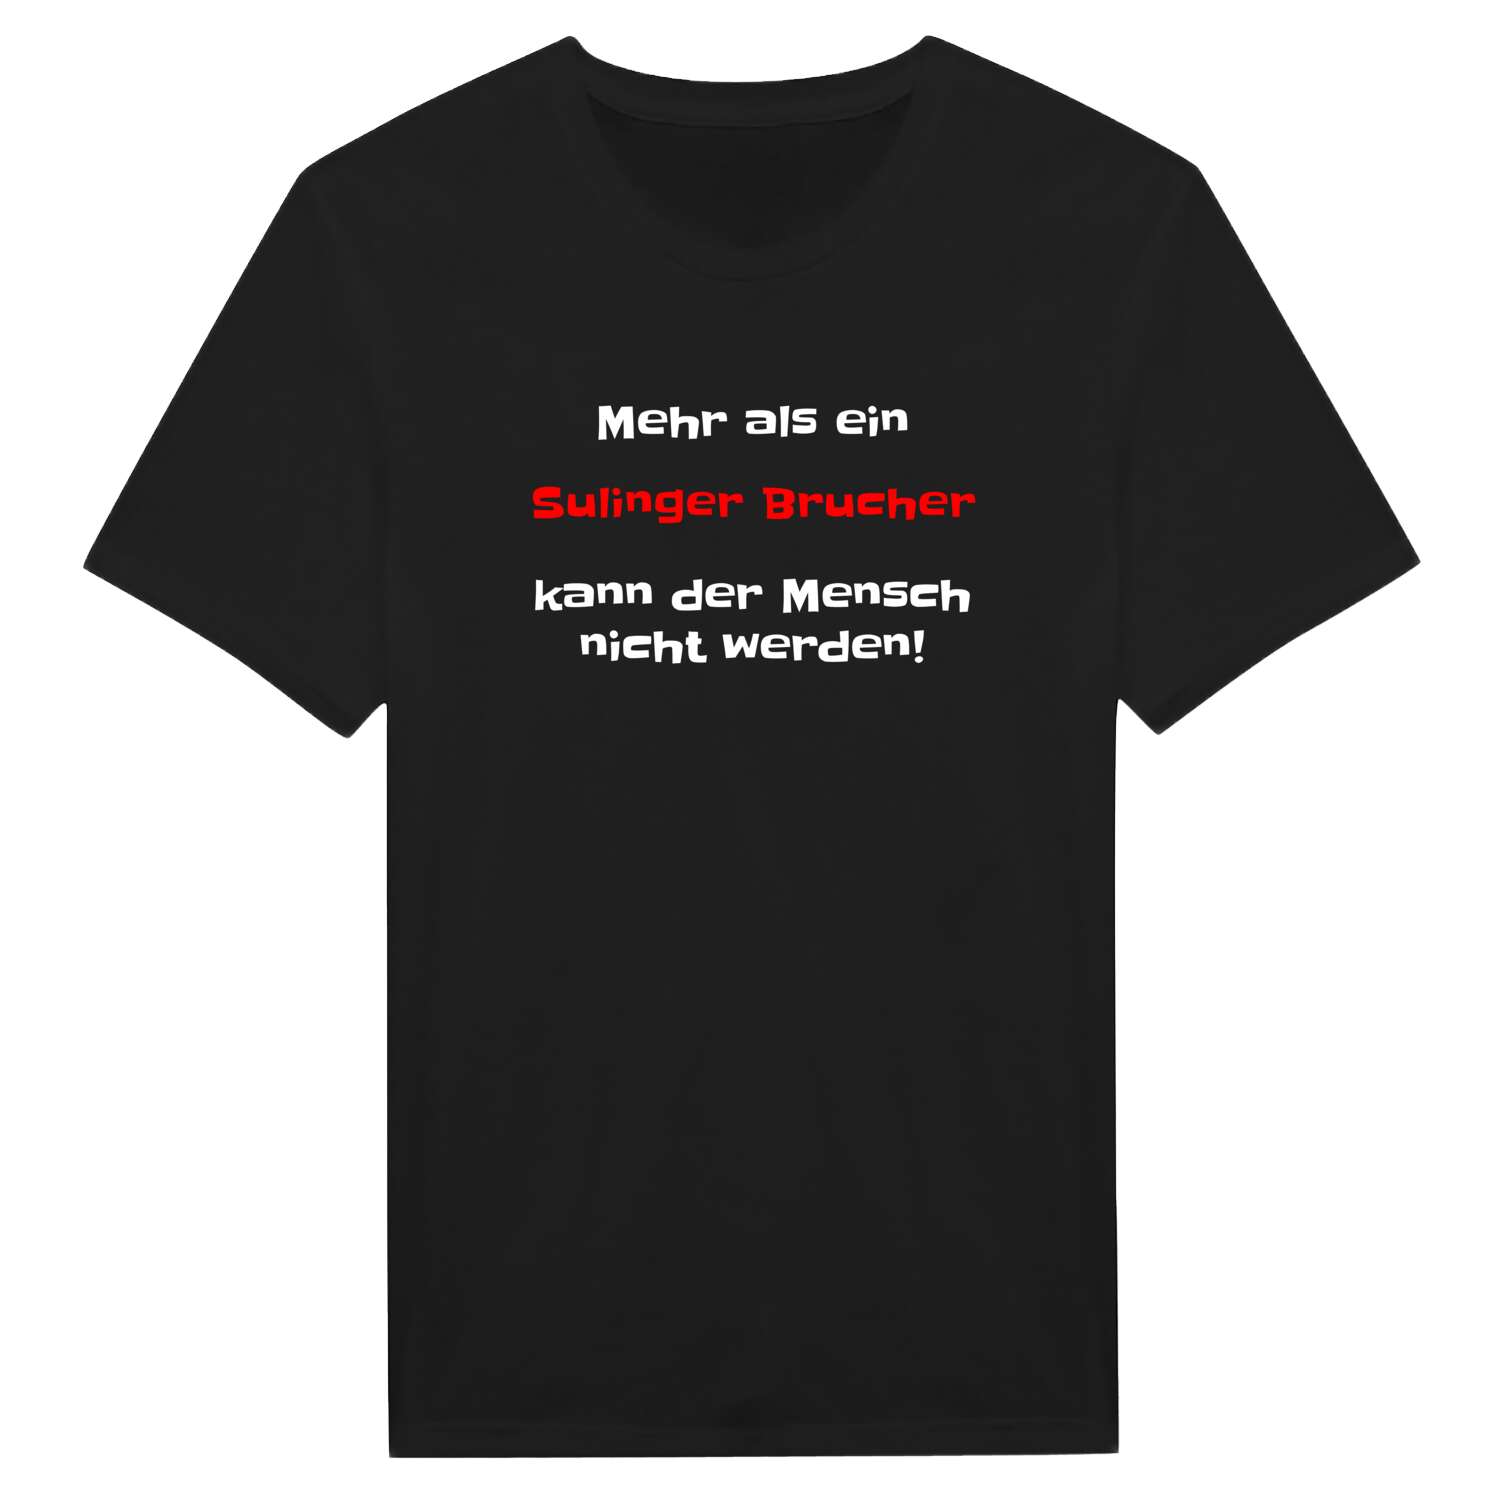 Sulinger Bruch T-Shirt »Mehr als ein«